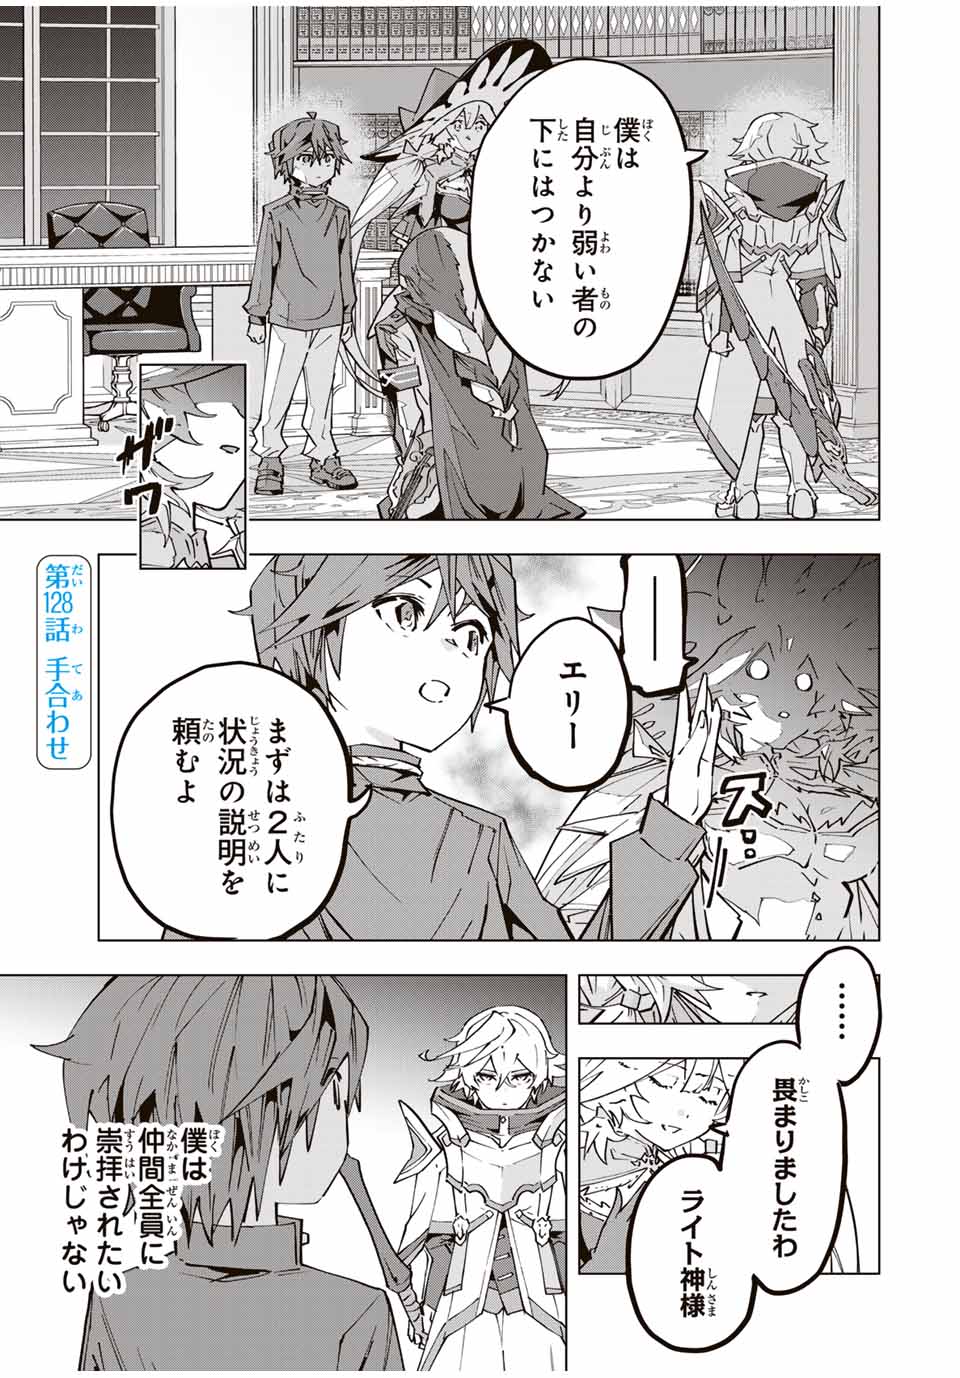 Shinjiteita Nakama Tachi ni Dungeon Okuchi de Korosarekaketa ga Gift Mugen Gacha de Level 9999 no Nakama Tachi - Chapter 128 - Page 1